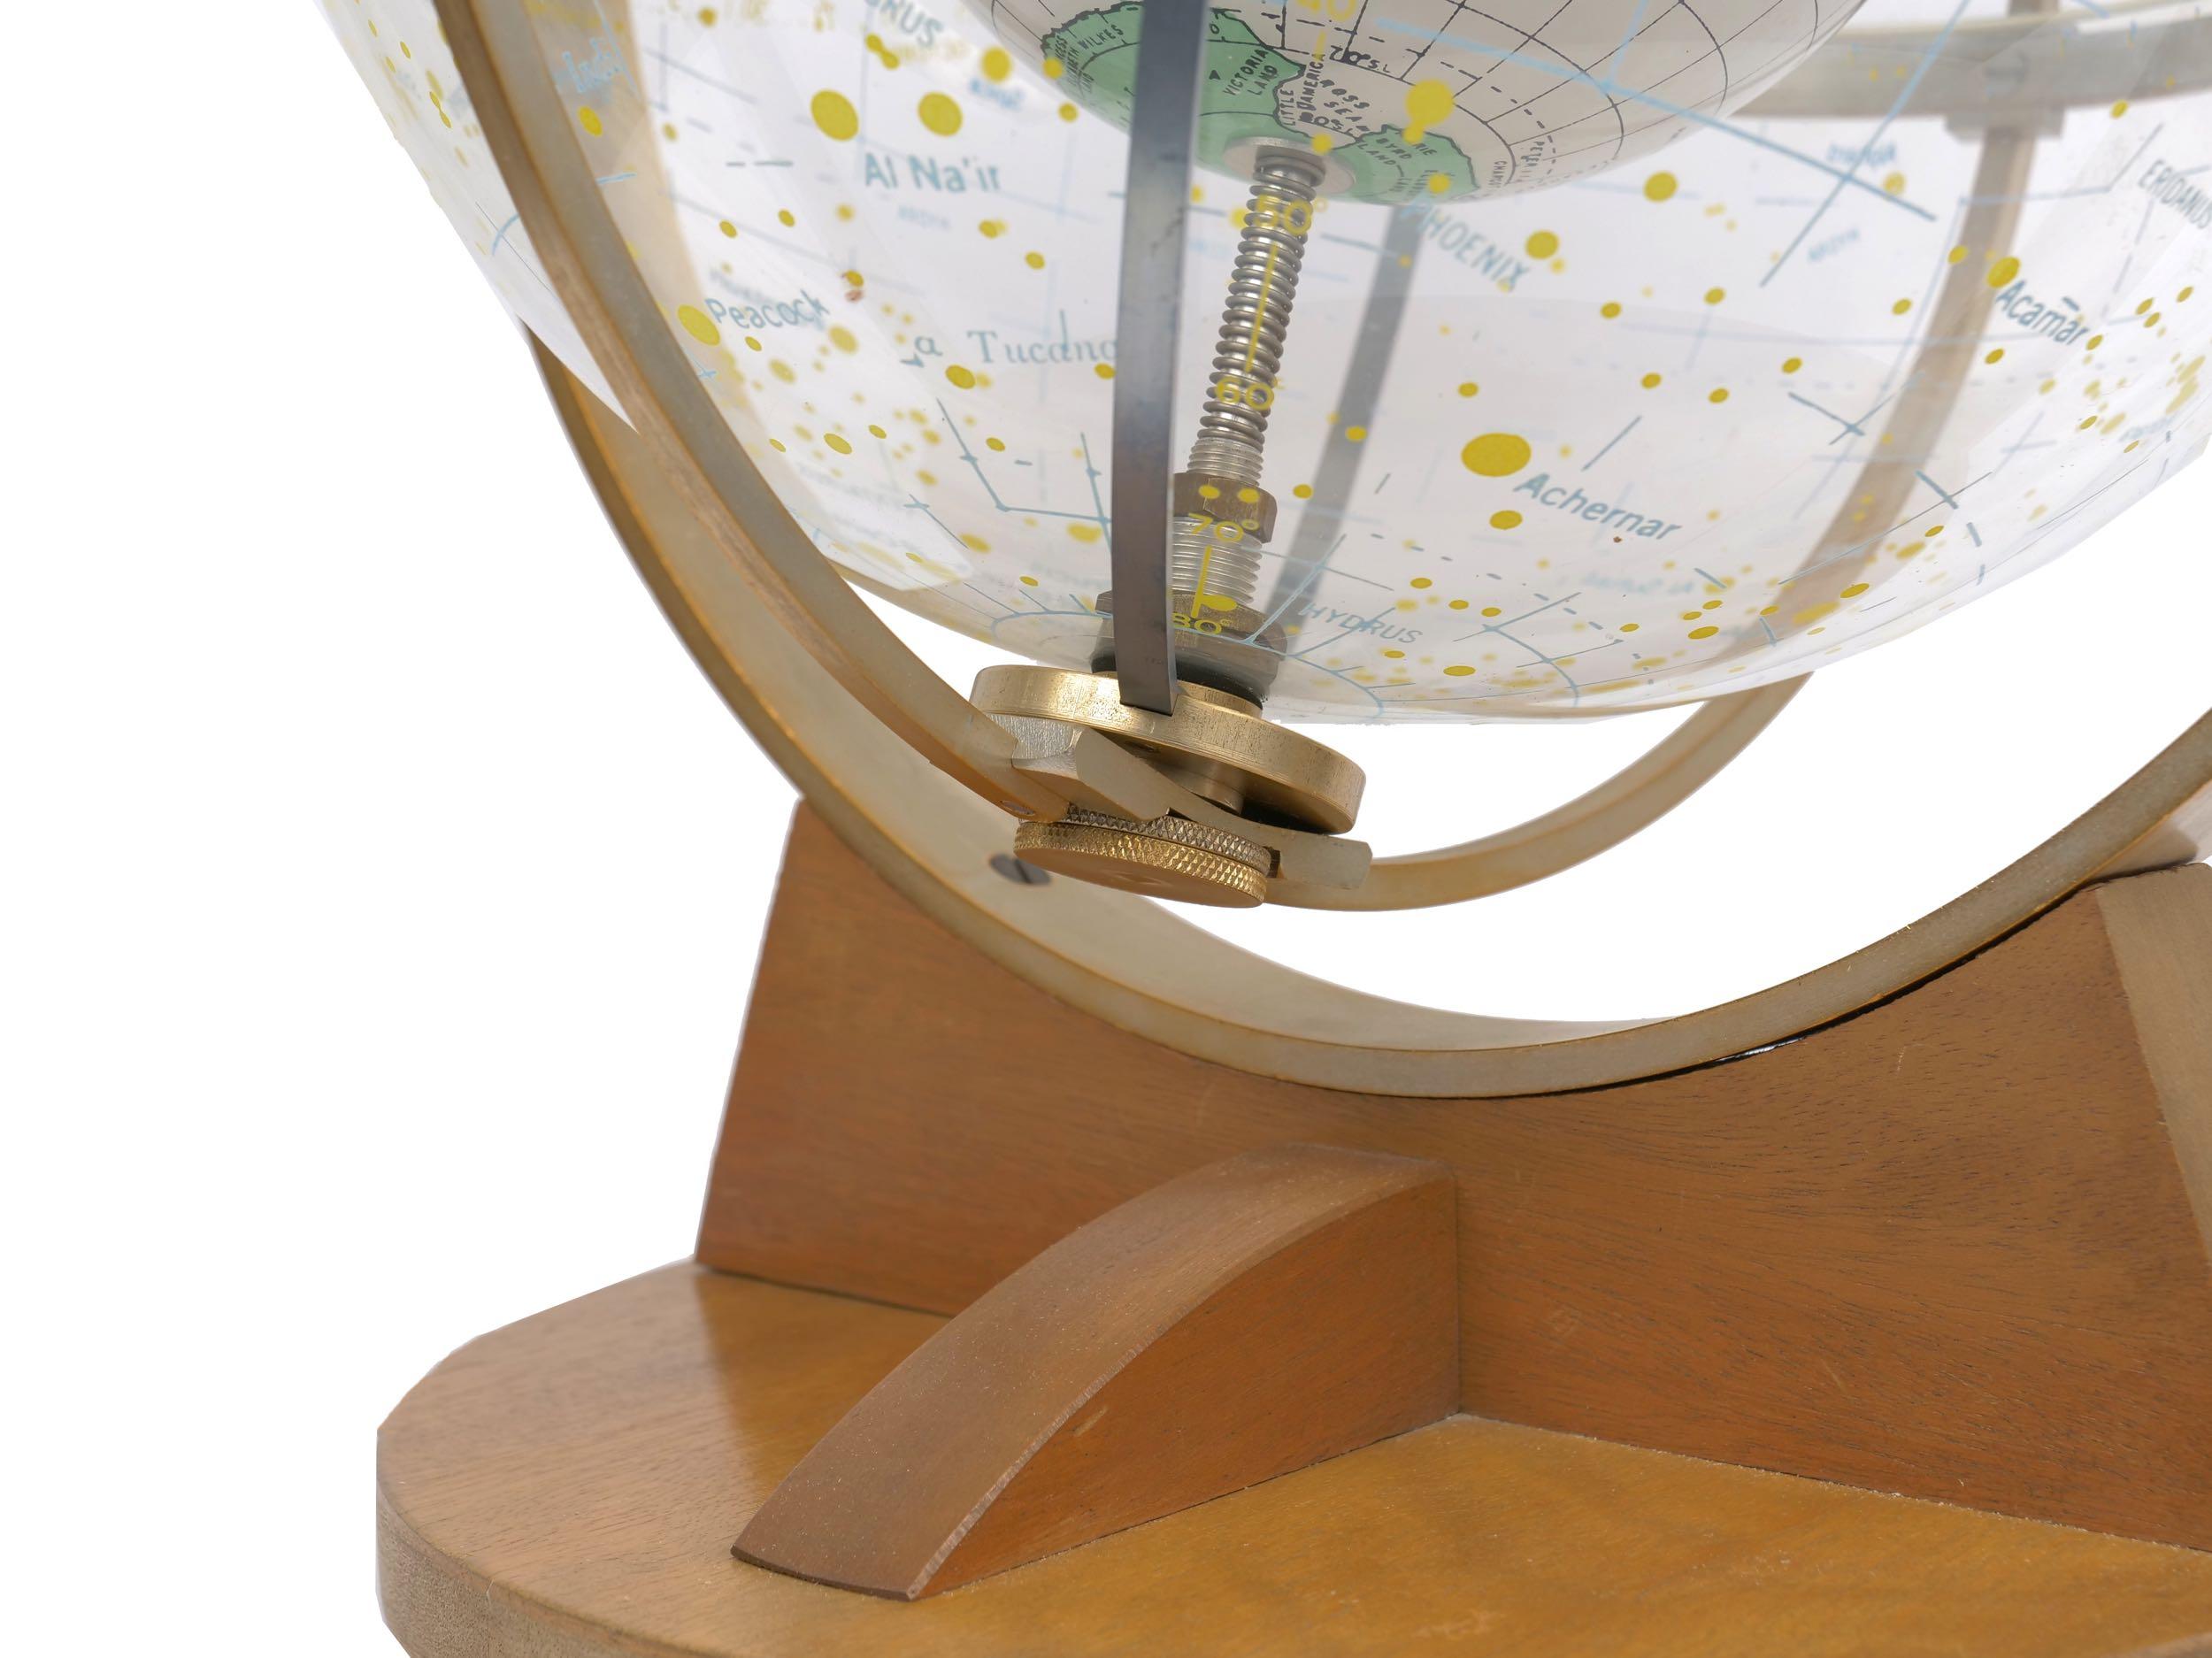 Farquhar Celestial Navigation Armillary Sphere Globe for Dept. of Navy 7